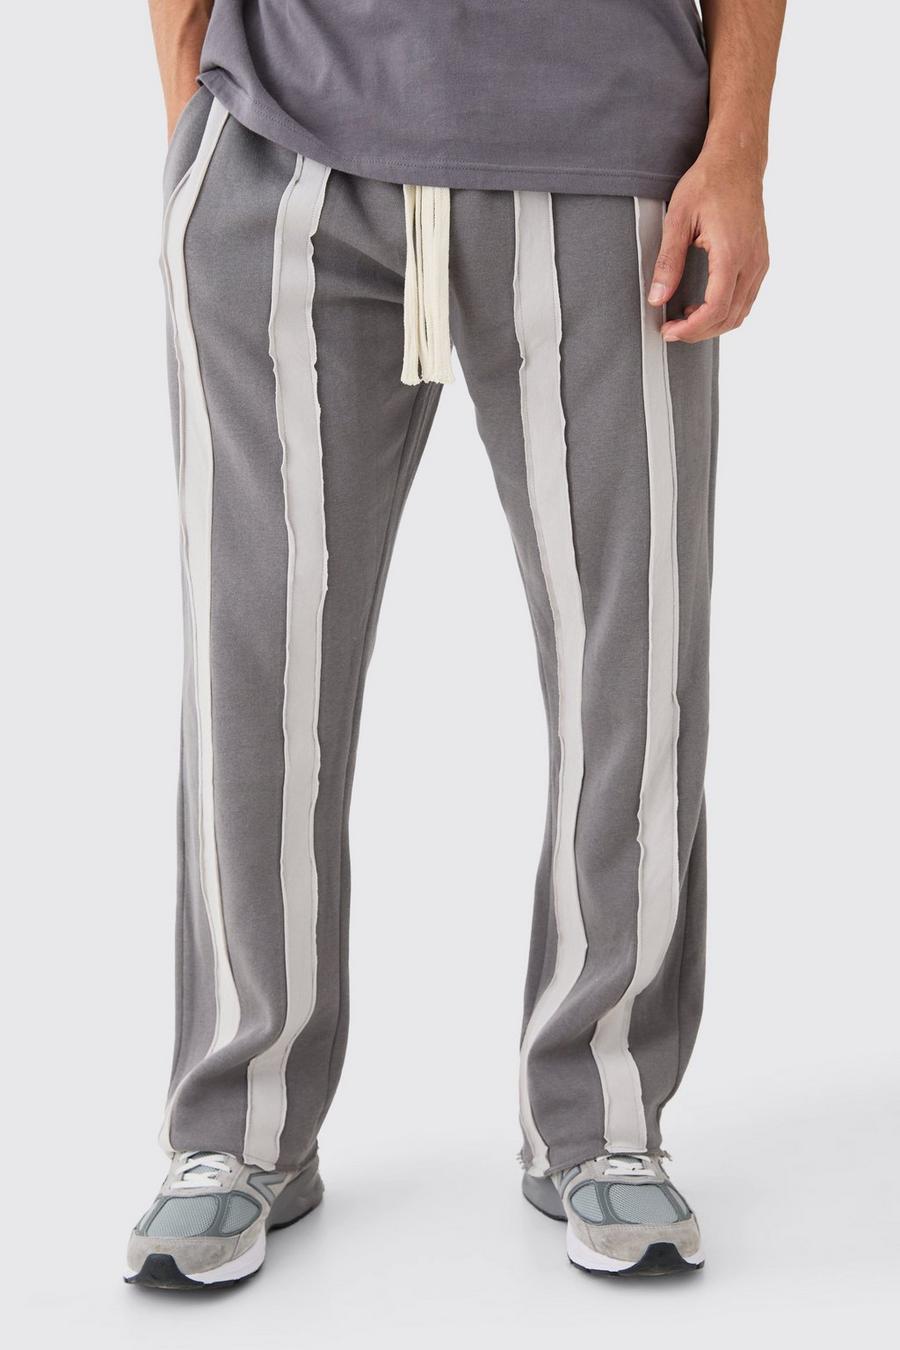 Pantalón deportivo holgado de rayas con costuras y filos sin acabar, Charcoal